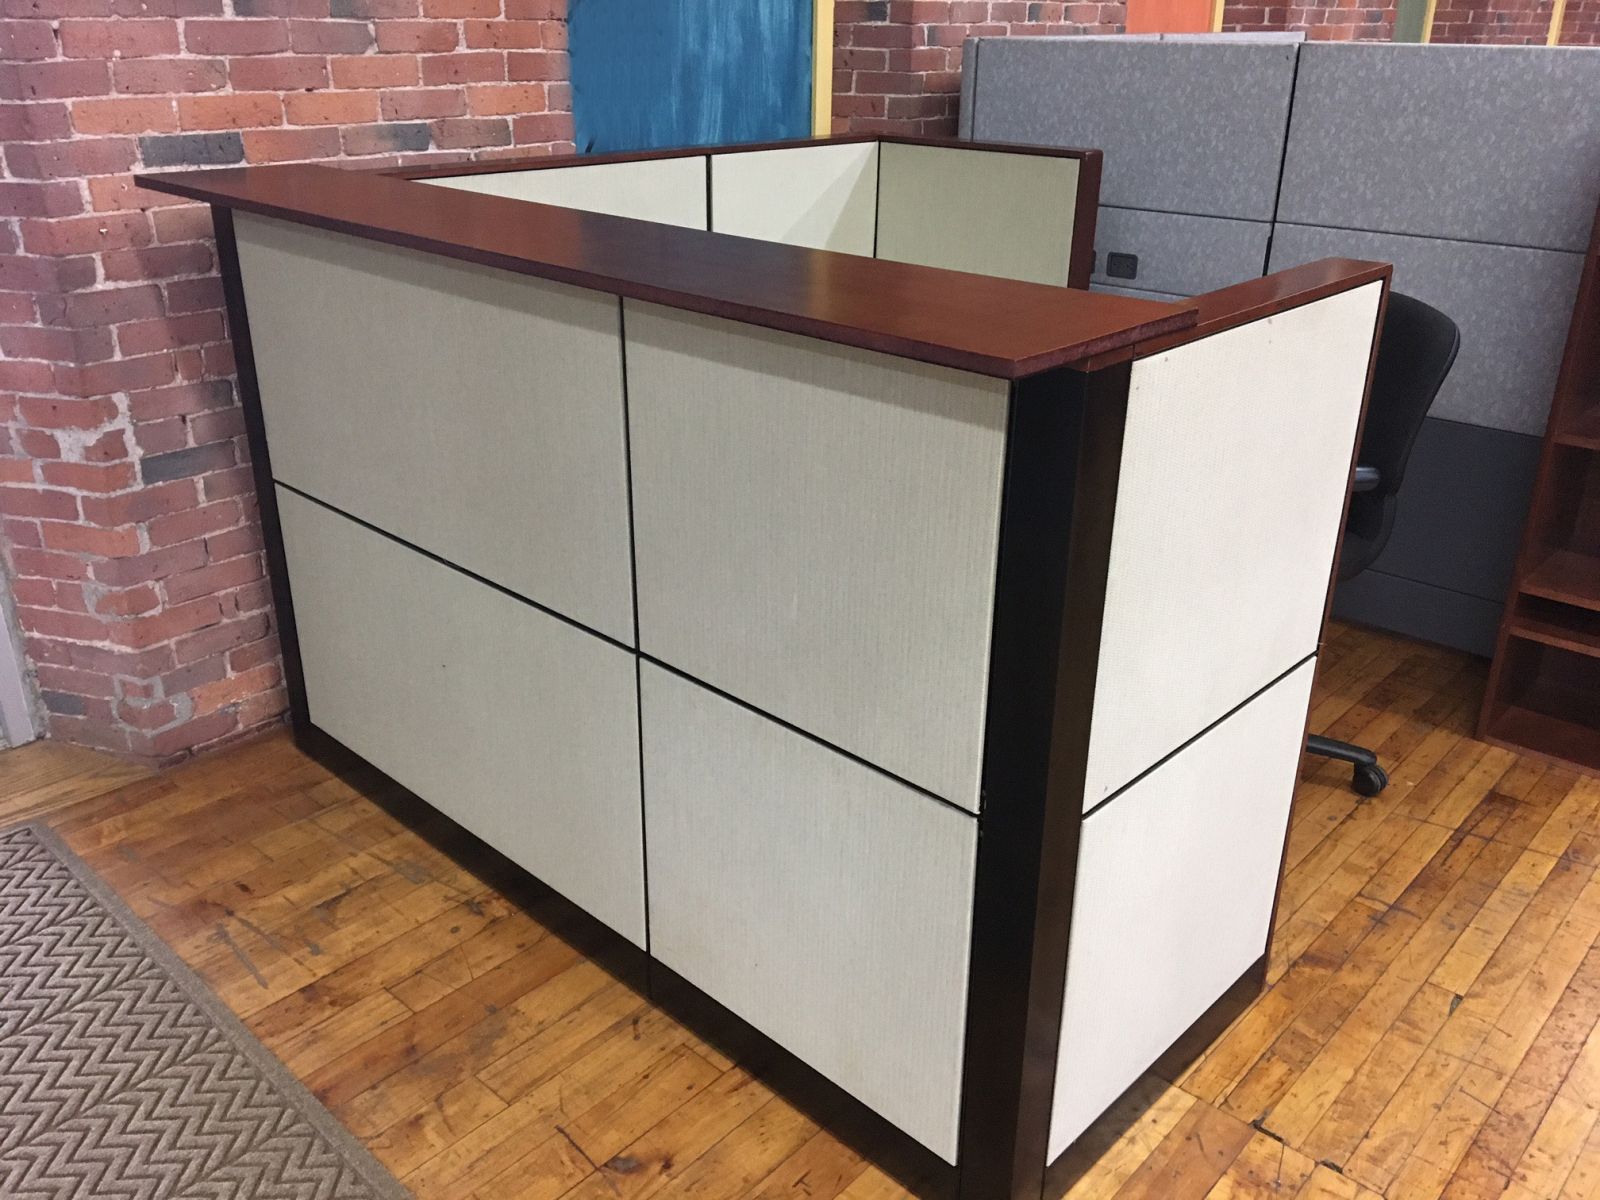 R6100C - 72" W x 77" D Refurbished Steelcase Reception Desk